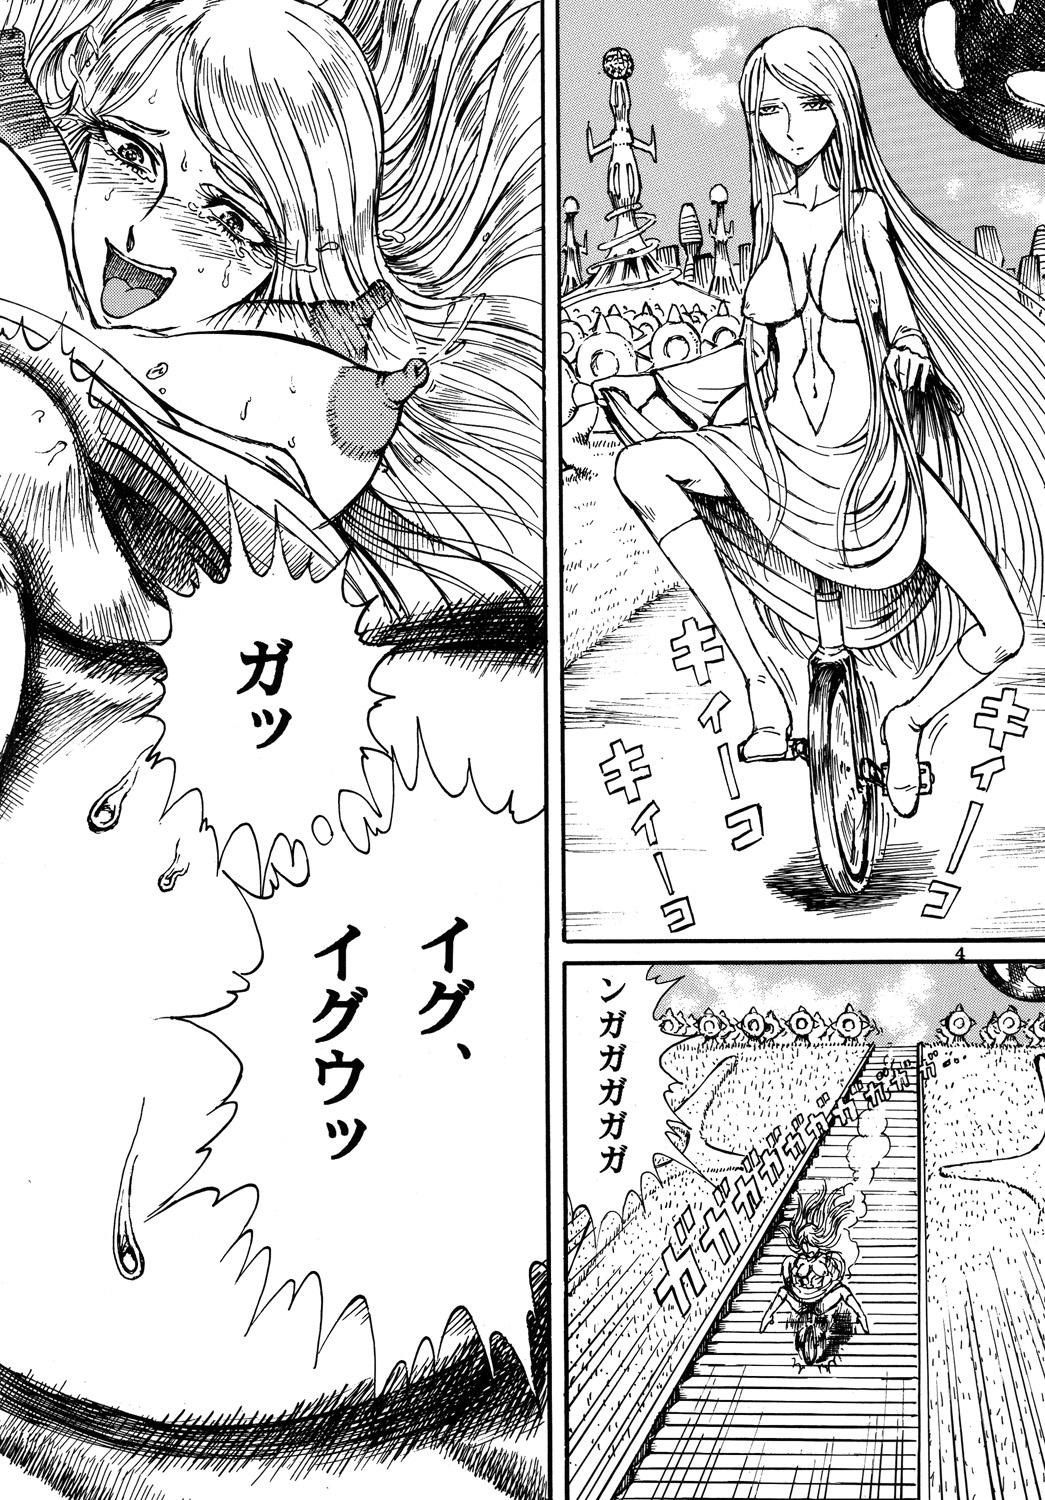 Ikillitts Youjinbou Otaku Matsuri 3 - Space battleship yamato Negra - Page 3